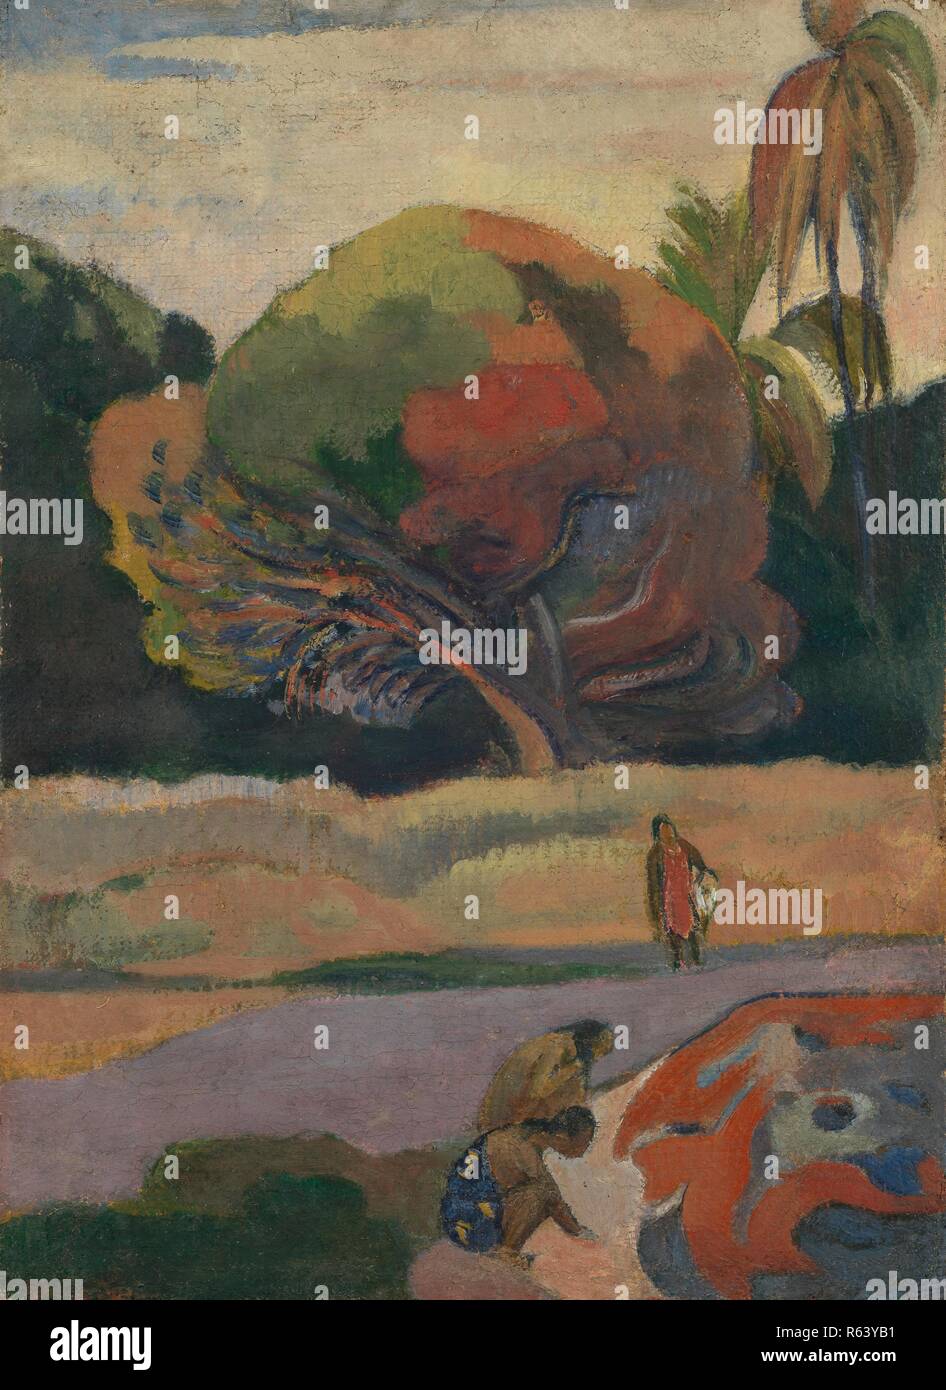 Les femmes sur les rives de la rivière. Date : 1892, Tahiti. Dimensions : 43,5 cm x 31,4 cm, 54,2 cm x 42,2 cm. Musée : Musée Van Gogh, Amsterdam. Auteur : GAUGUIN, PAUL. PAUL GAUGUIN. Banque D'Images